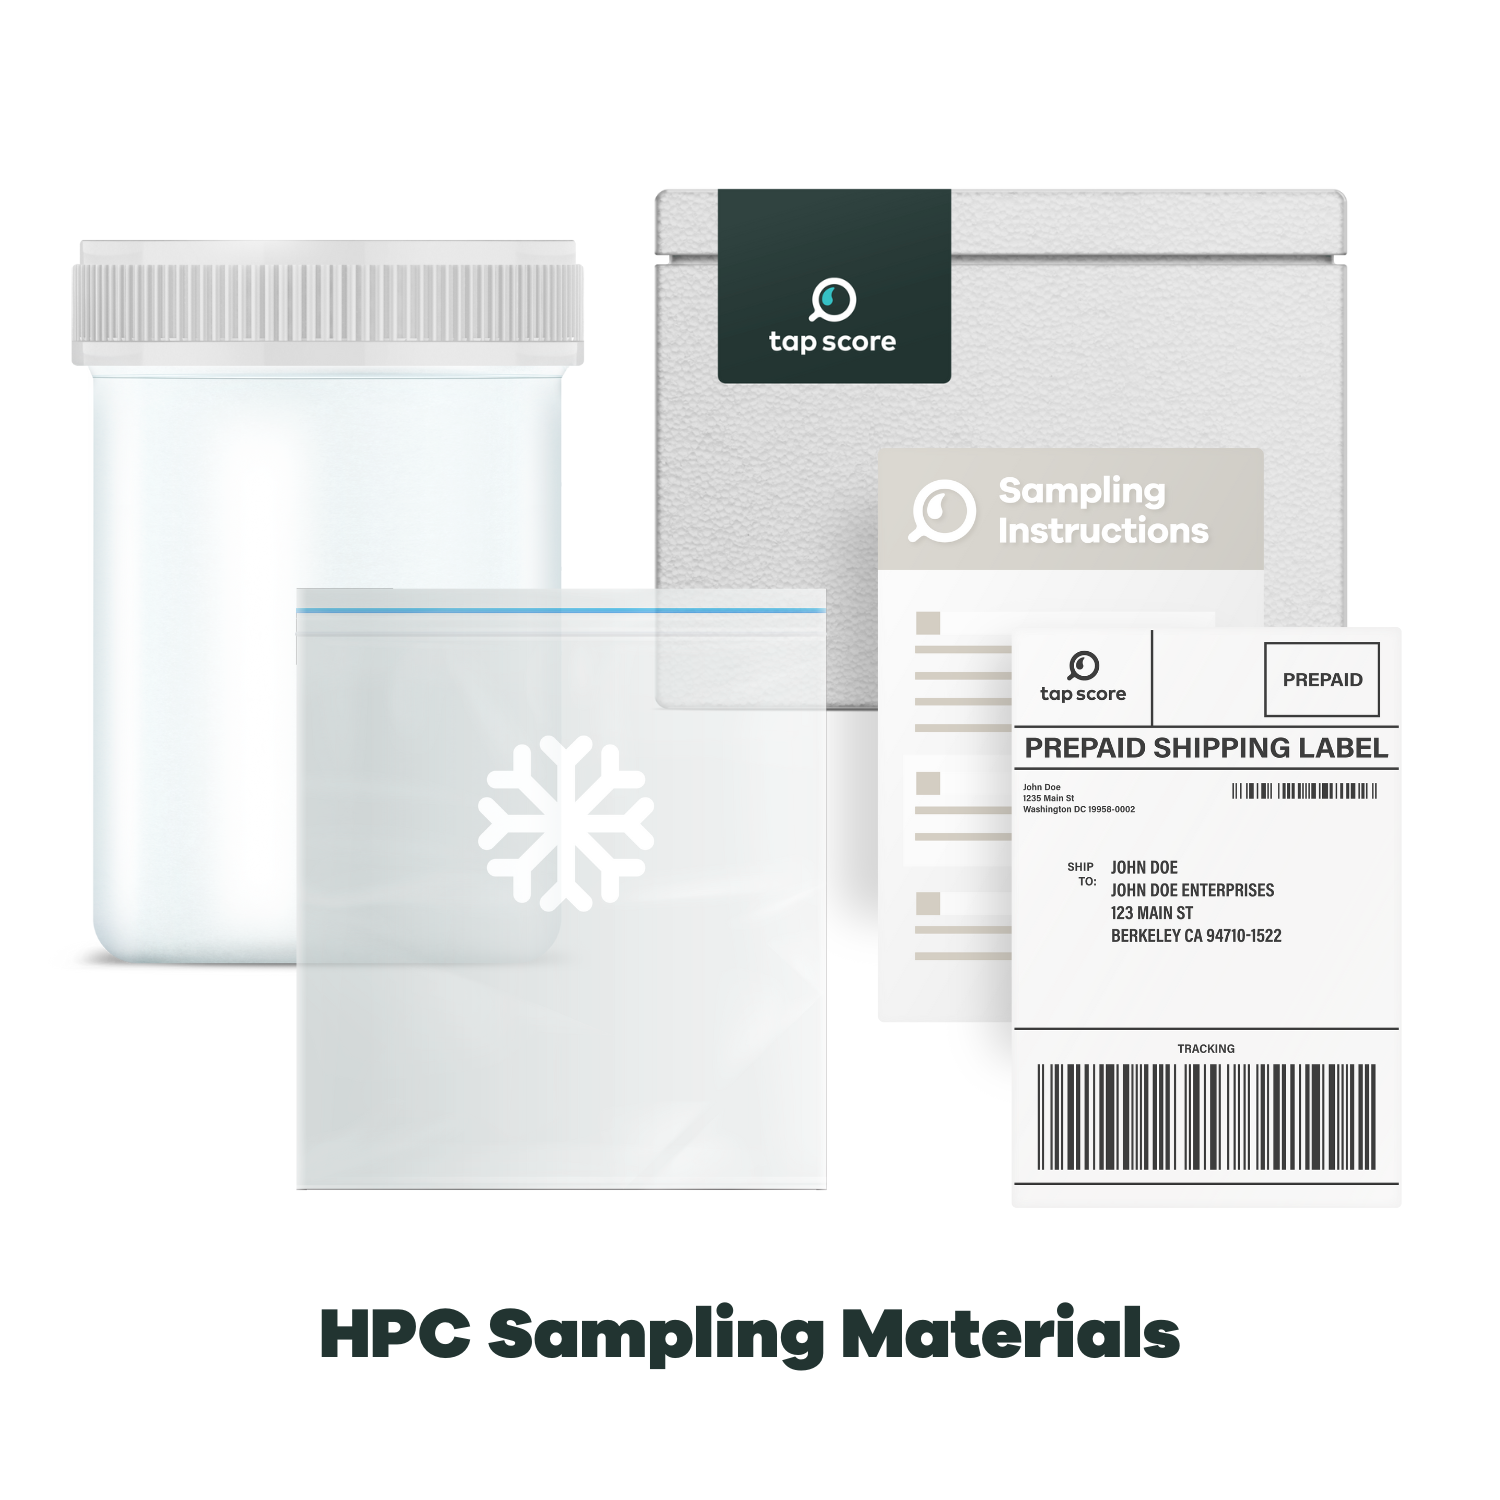 HPC Sampling Materials for Laboratory Testing